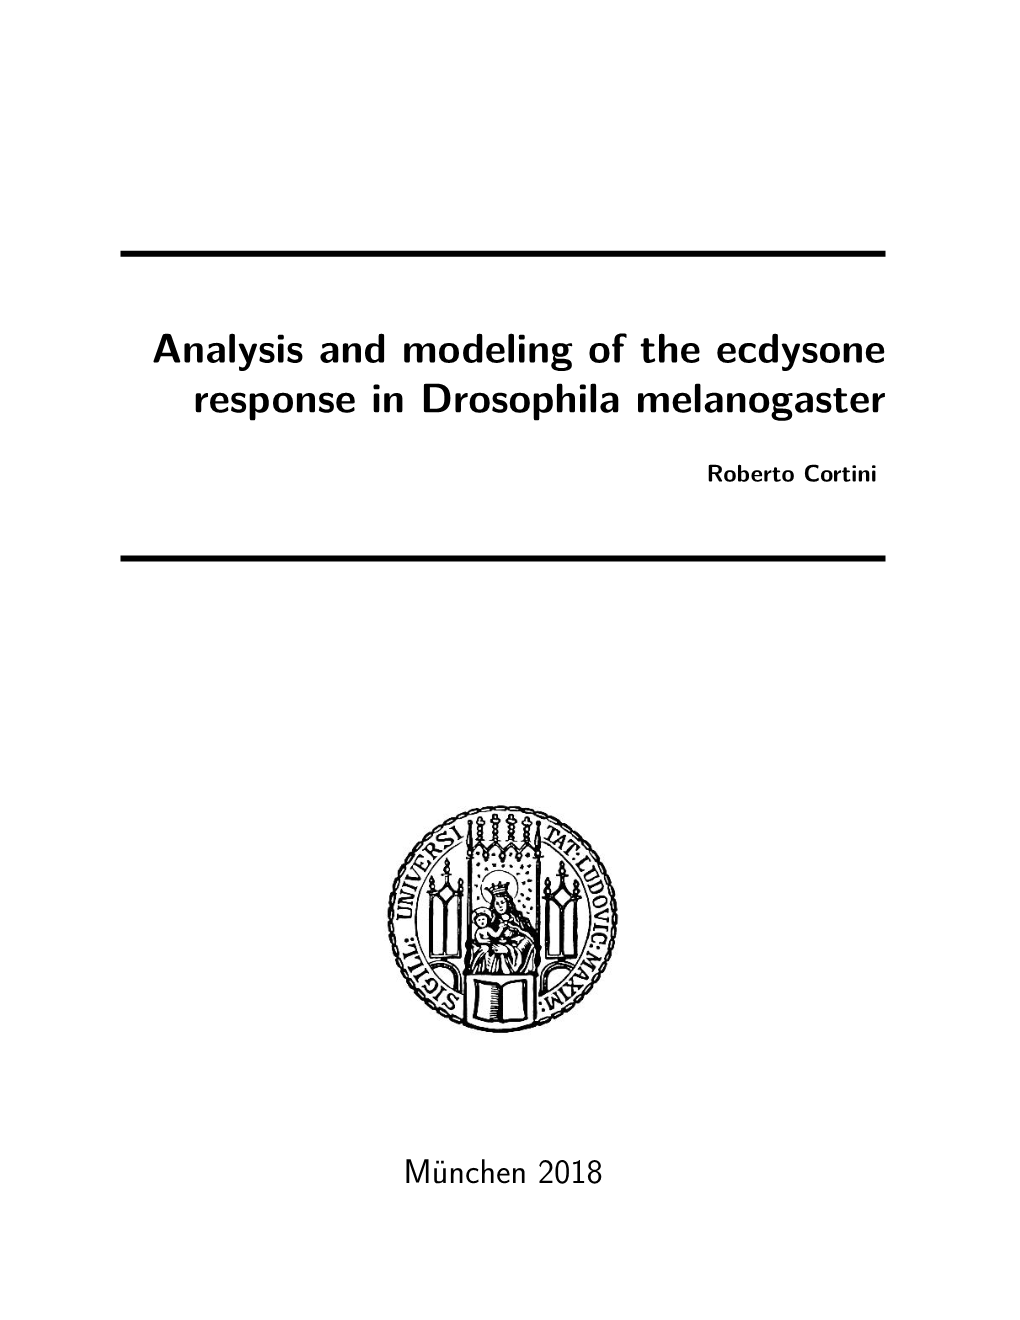 Analysis and Modeling of the Ecdysone Response in Drosophila Melanogaster